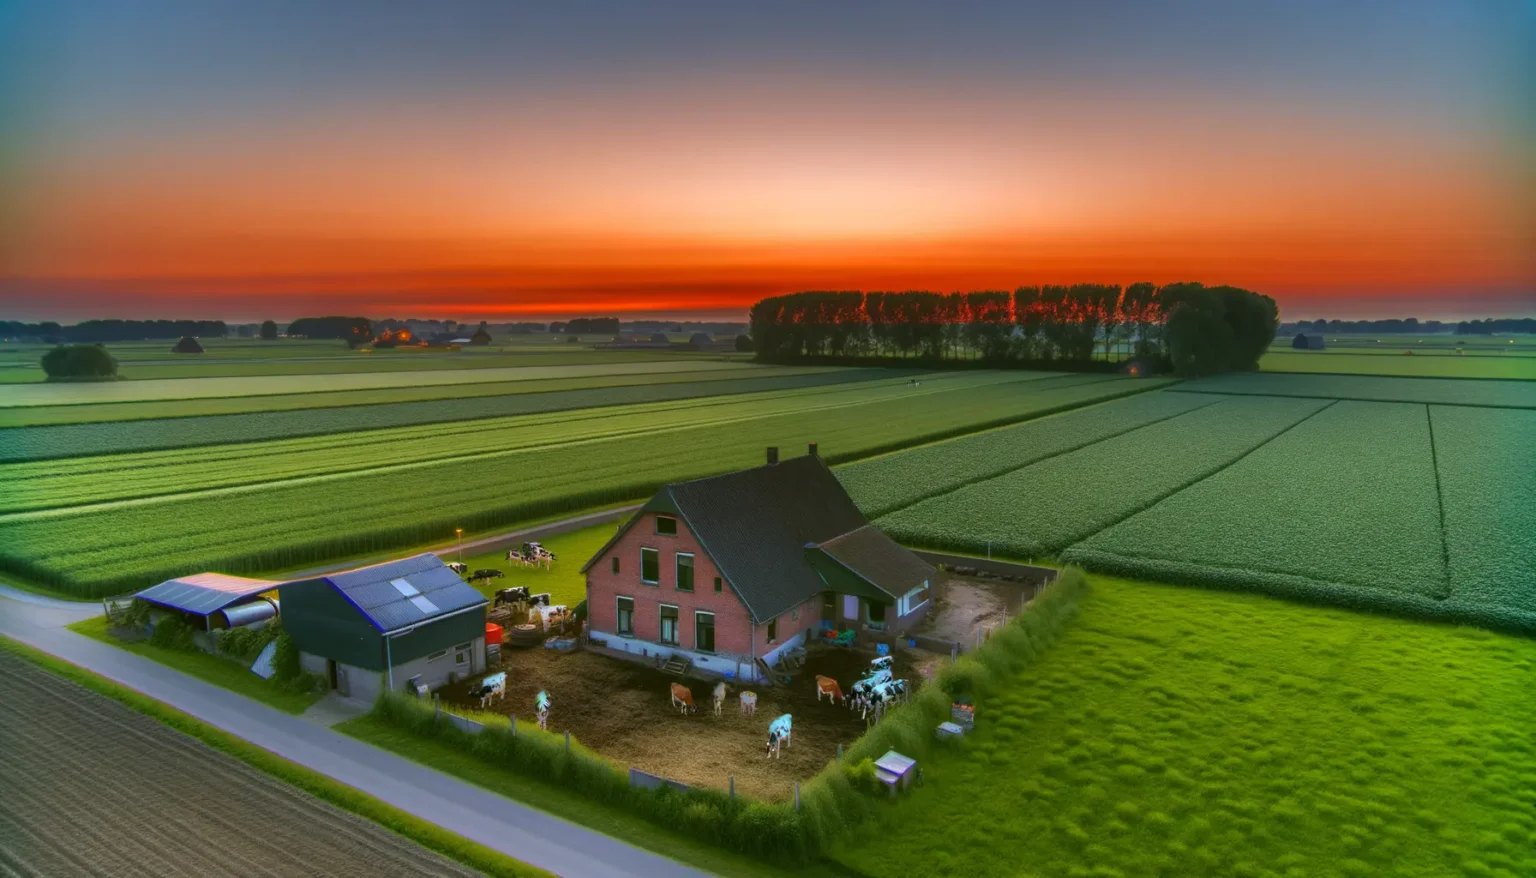 Ein idyllischer Bauernhof bei Sonnenuntergang mit markantem orangefarbenem Himmel im Hintergrund und weiten, gut abgegrenzten landwirtschaftlichen Feldern im Vordergrund. Im Zentrum befindet sich ein zweistöckiges Wohnhaus mit angrenzenden Stallungen und einem kleinen Viehbestand, einschließlich Kühen, die sich in einem umzäunten Bereich aufhalten.